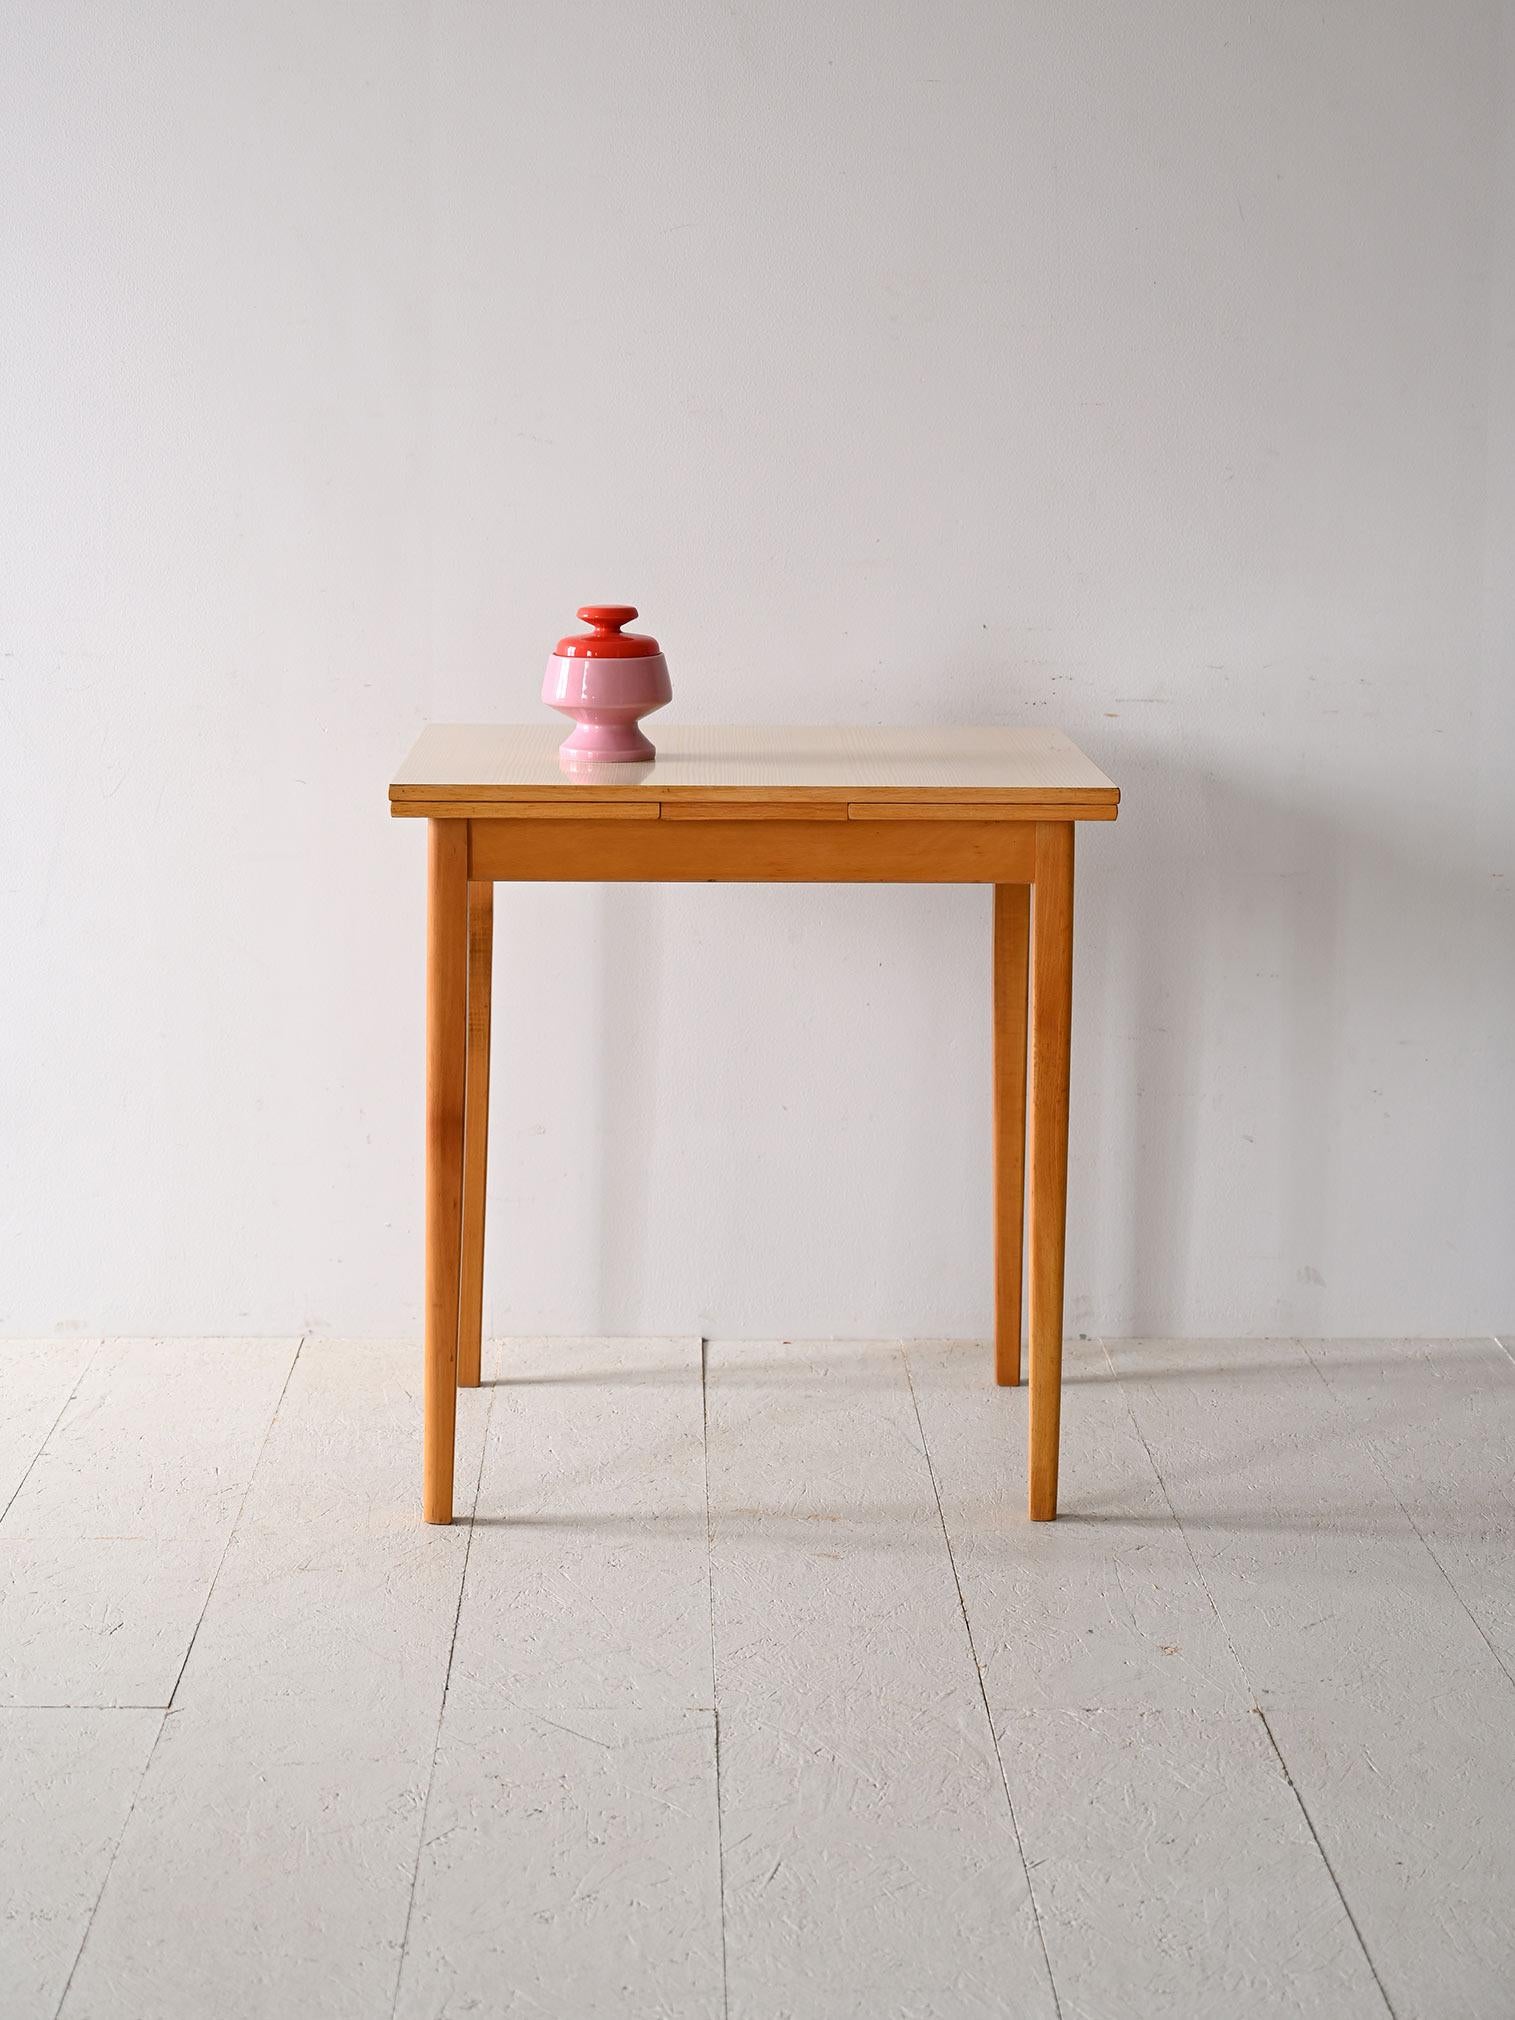 Table de salle à manger originale des années 1960 avec rallonges latérales.

Ce meuble vintage d'origine nordique présente le goût et la fonctionnalité typiques du design scandinave. La structure porteuse est en bois de bouleau léger tandis que le